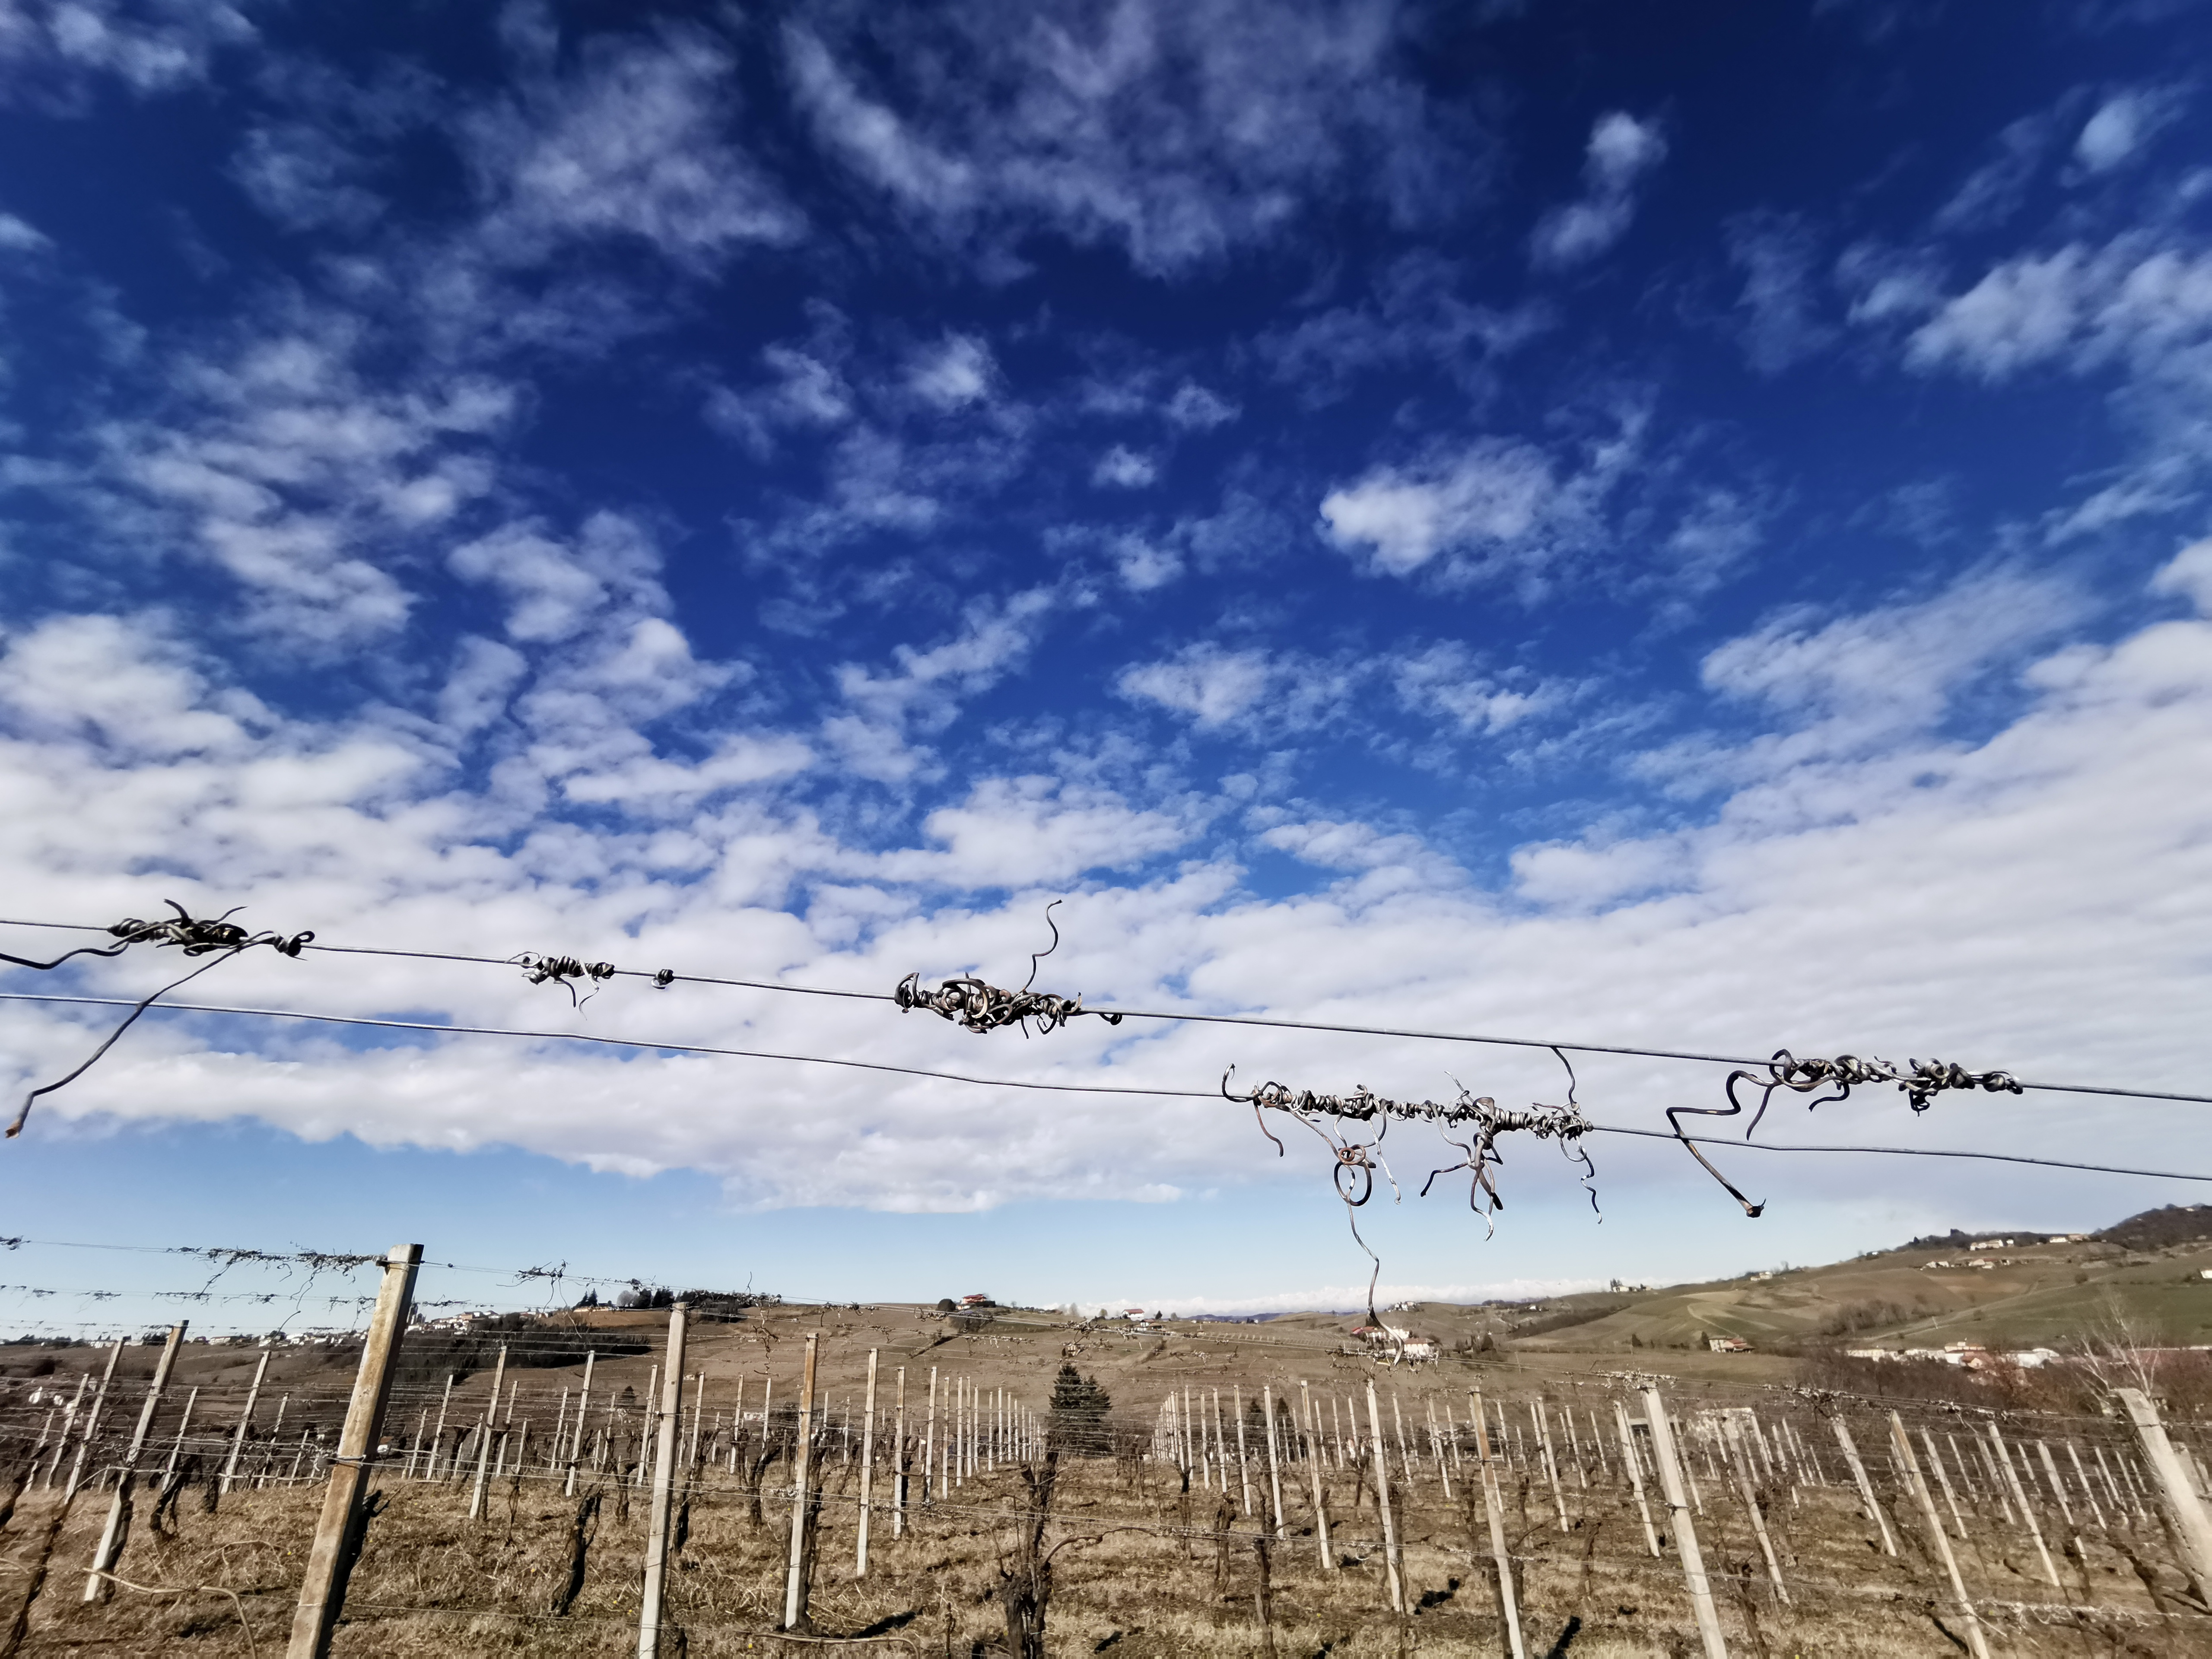 Primavera 2020, le vigne del Brachetto si risvegliano. la lezione della natura: dopo qualsiasi inverno arriva la rinascita. Sempre